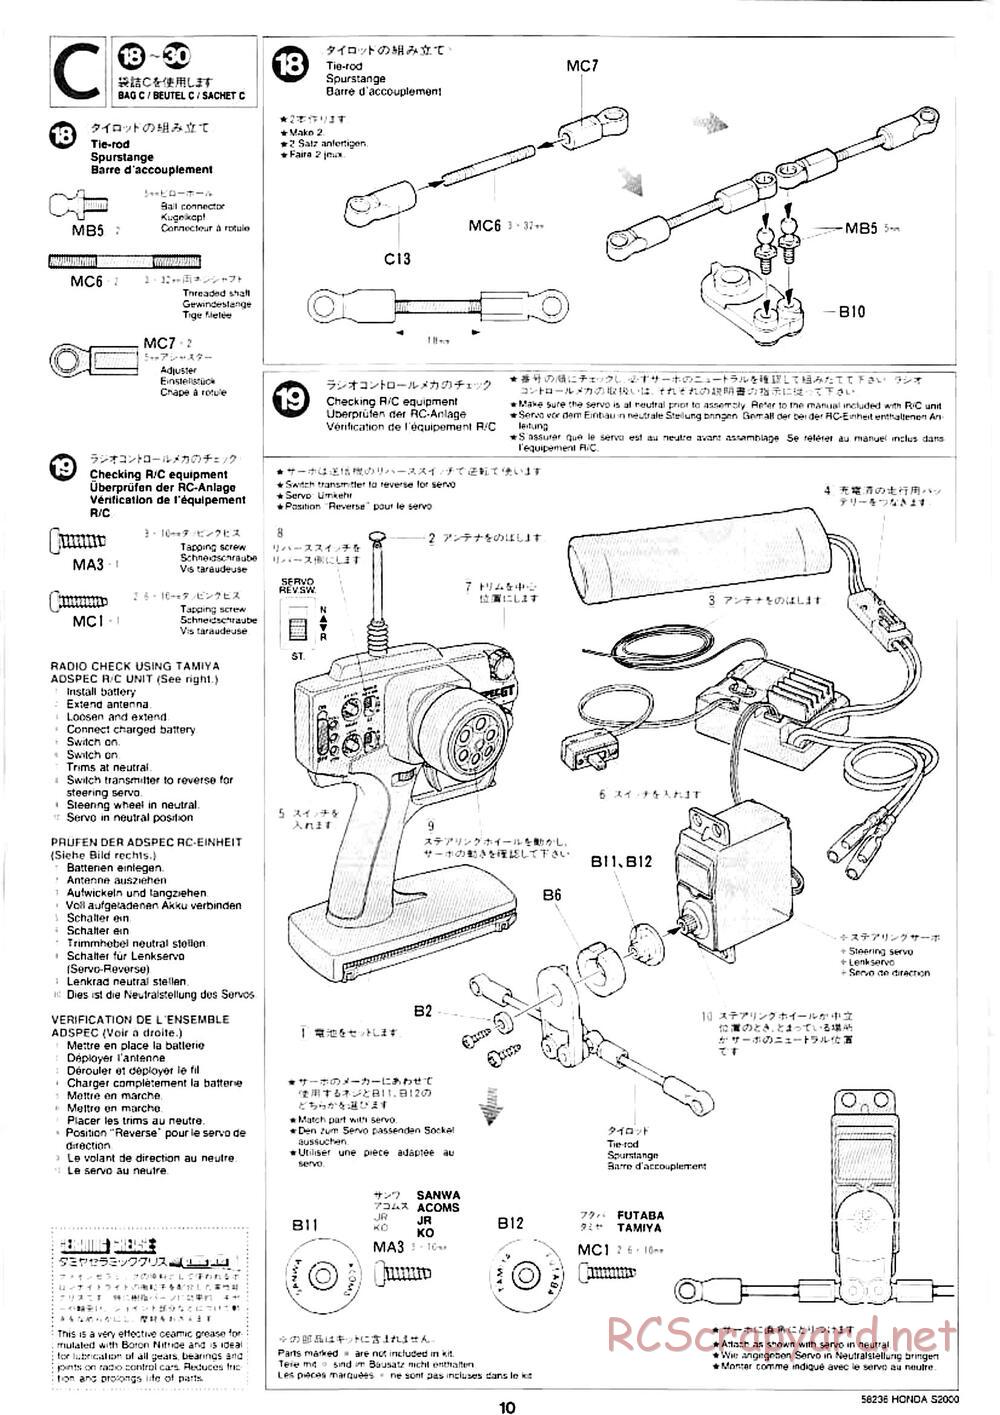 Tamiya - Honda S2000 - M04L Chassis - Manual - Page 8